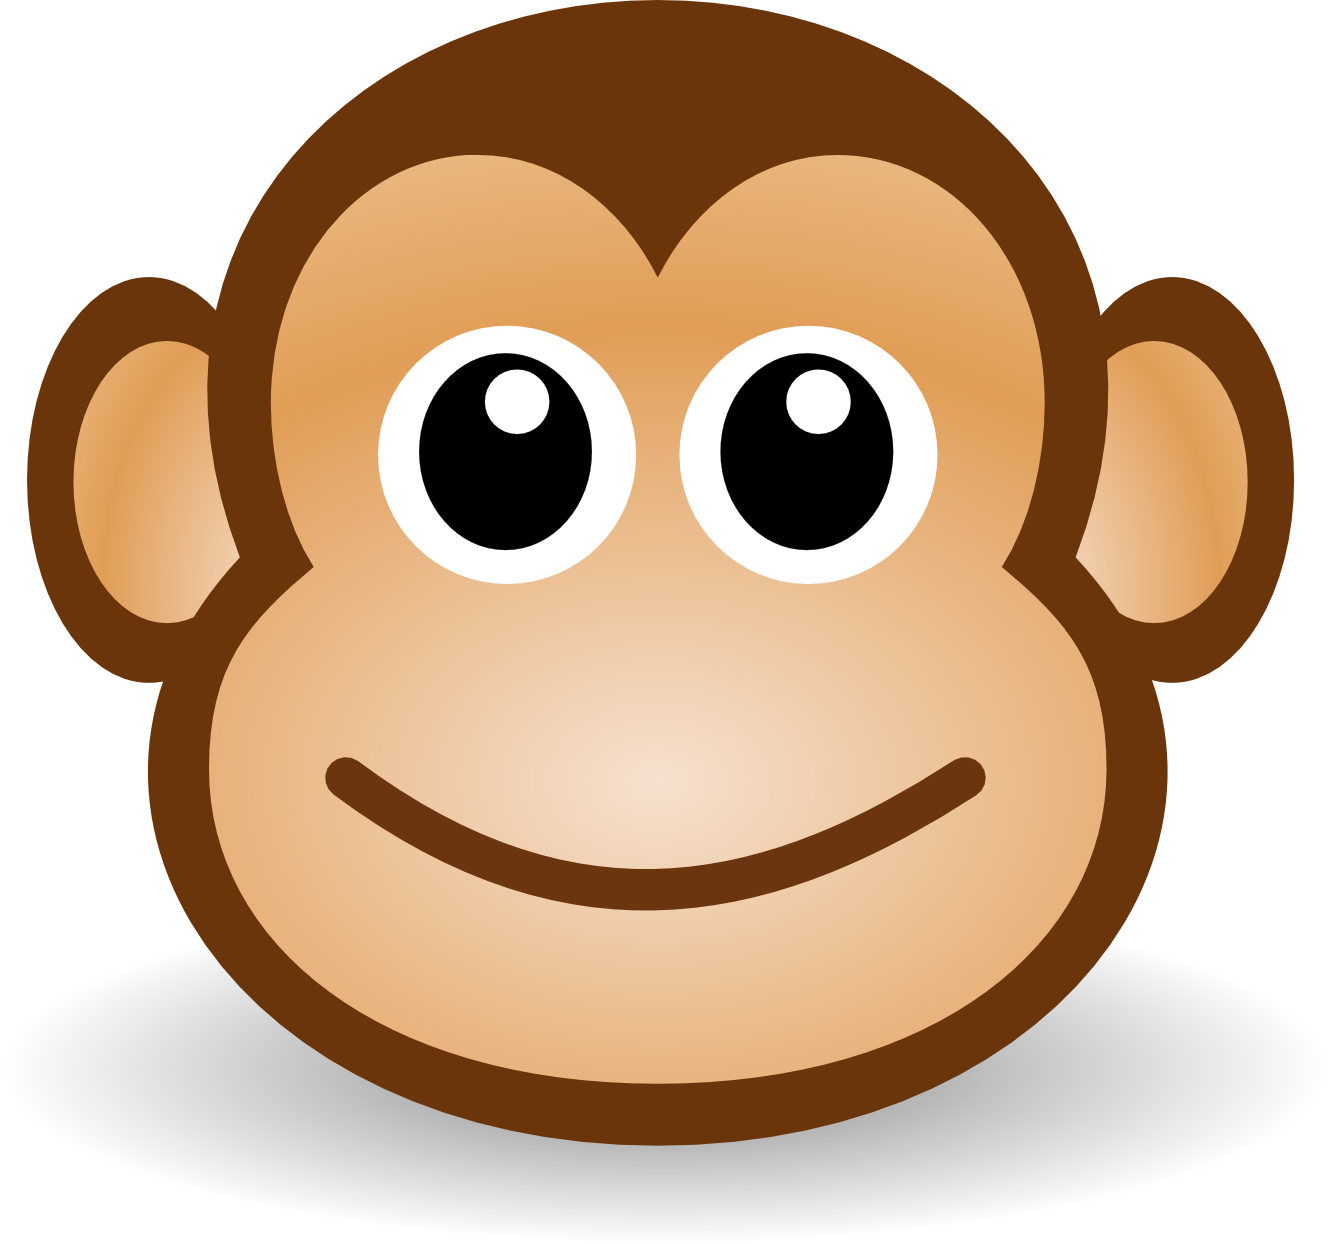 Sad Monkey Face images